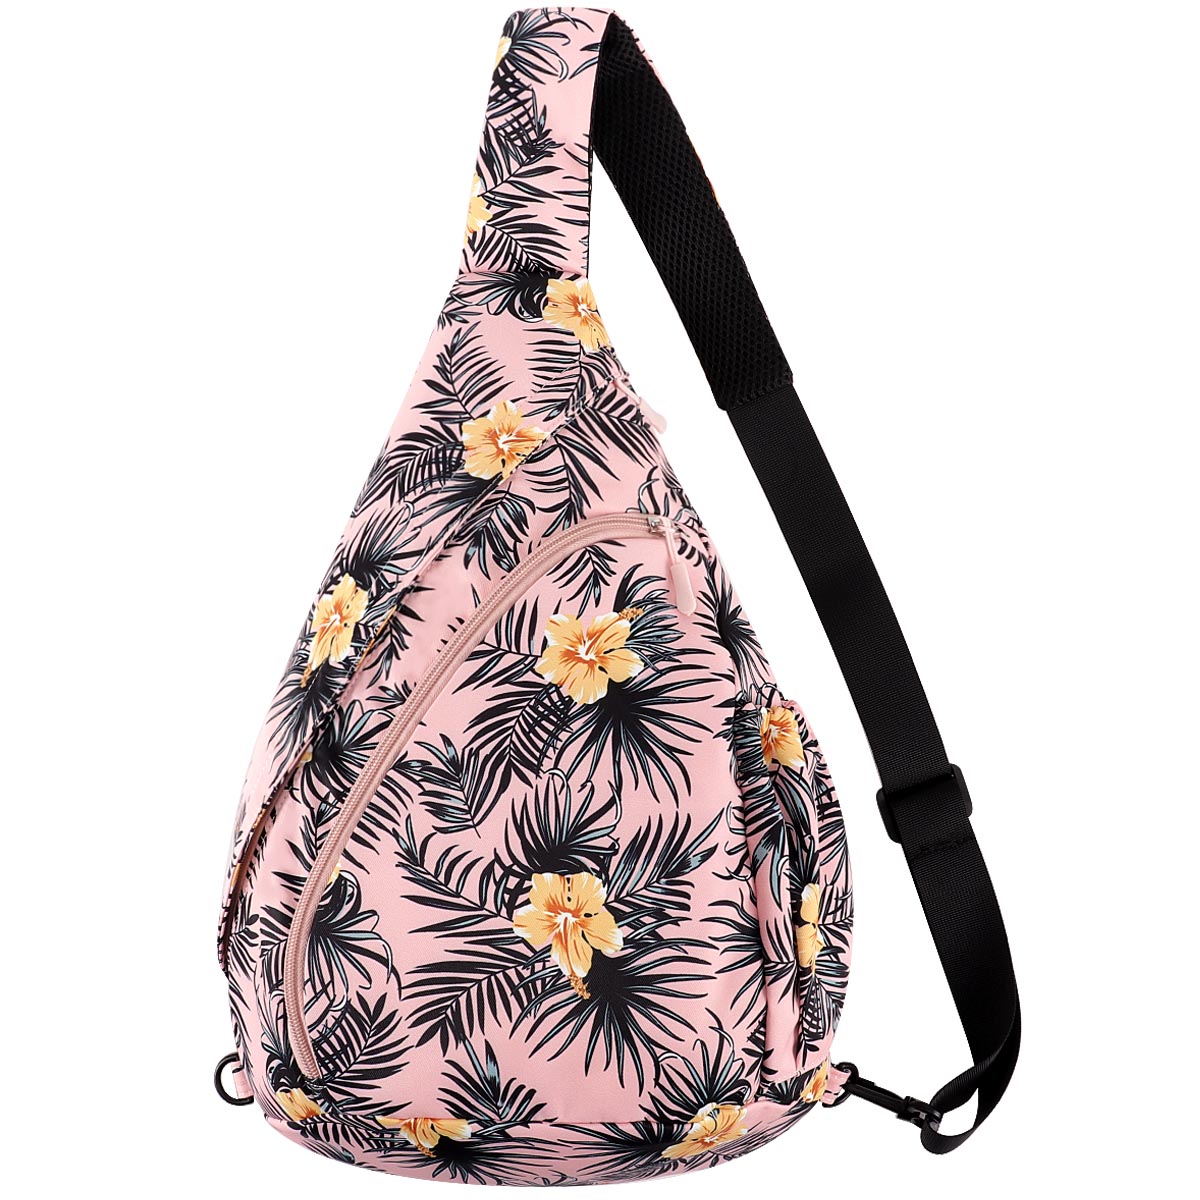 KAWELL Sling Backpack - Unisex Messenger Bag Crossbody Backpack Travel Multipurpose Daypacks for Men Women Lady Girl Teens - image 1 of 7